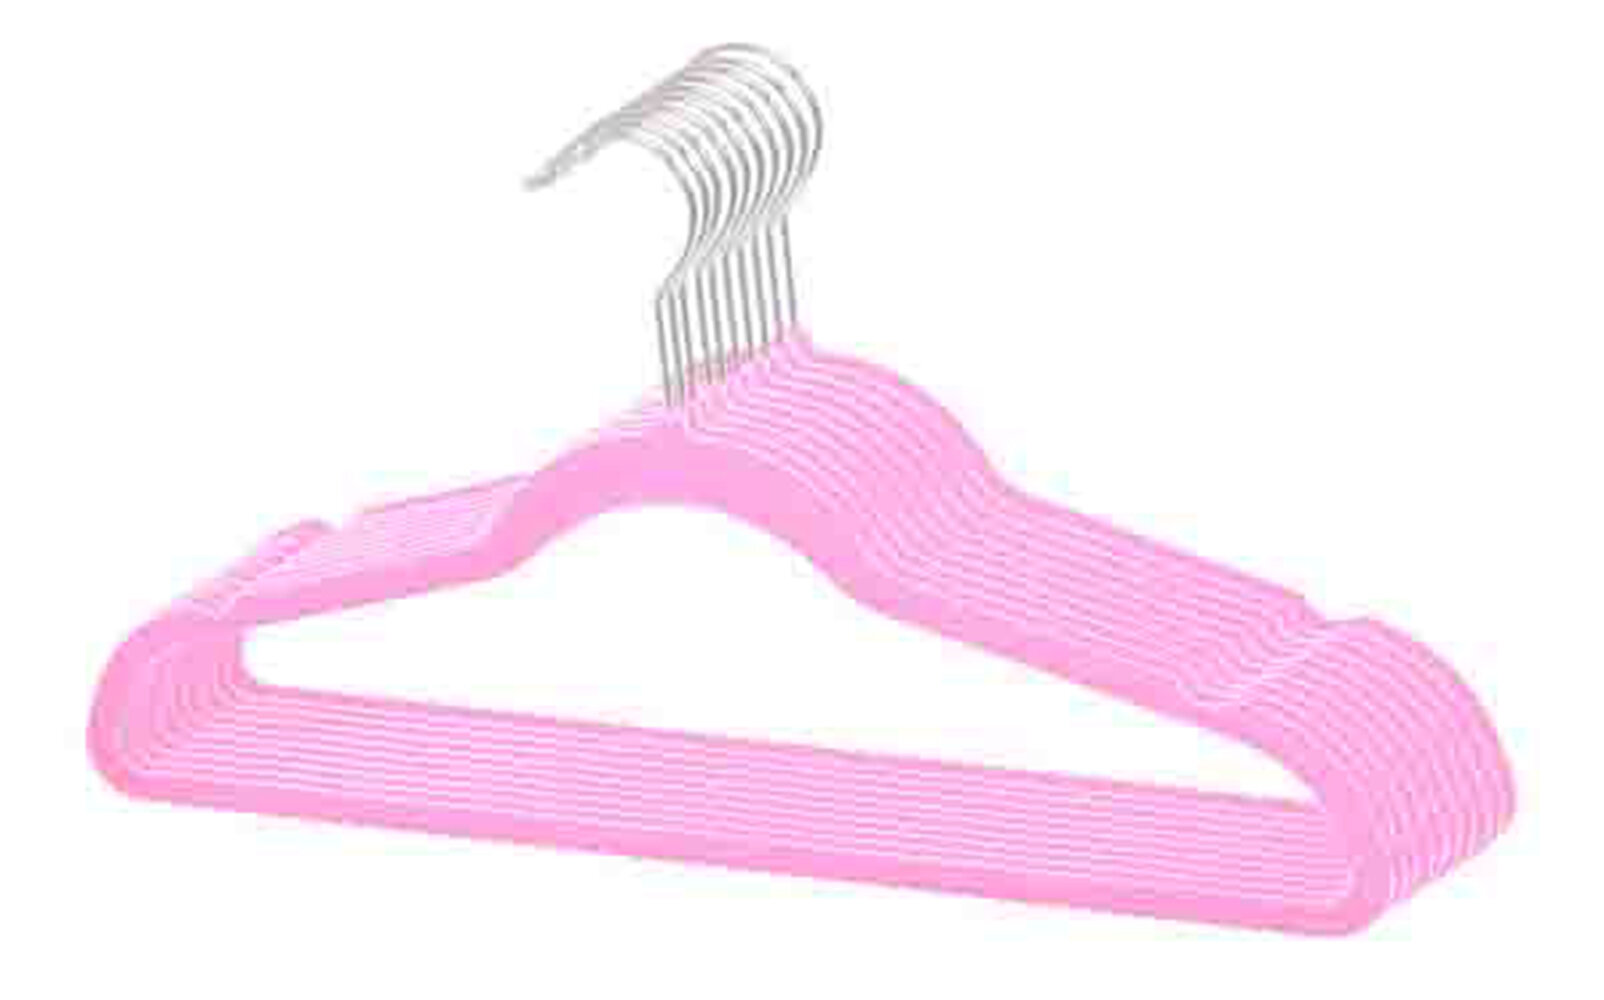 Standard White Plastic Hangers Pack of 100 Strap Hooks Slim Space